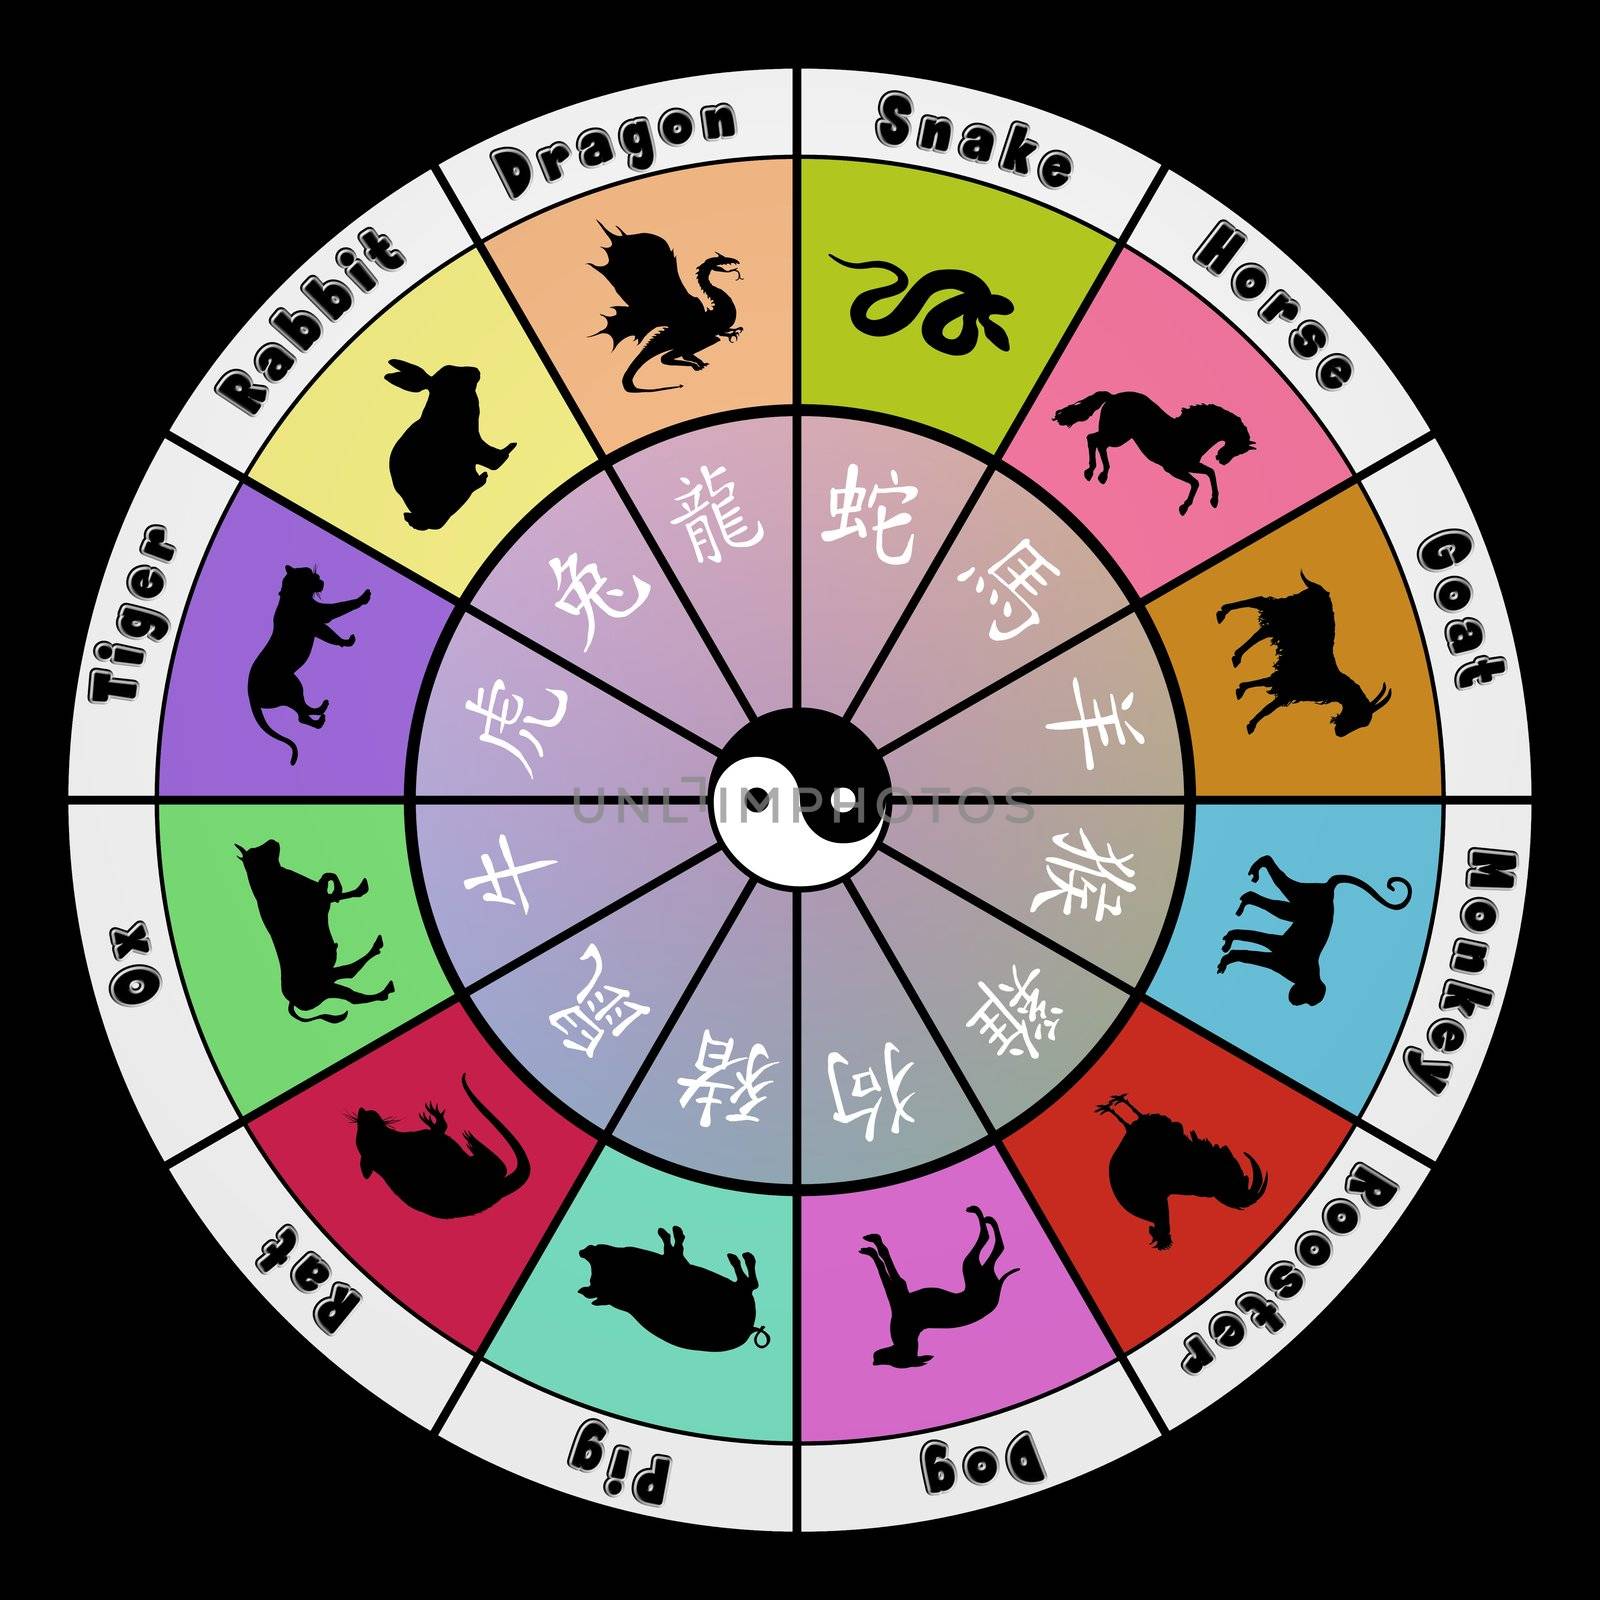 Zodiac symbols by darrenwhittingham